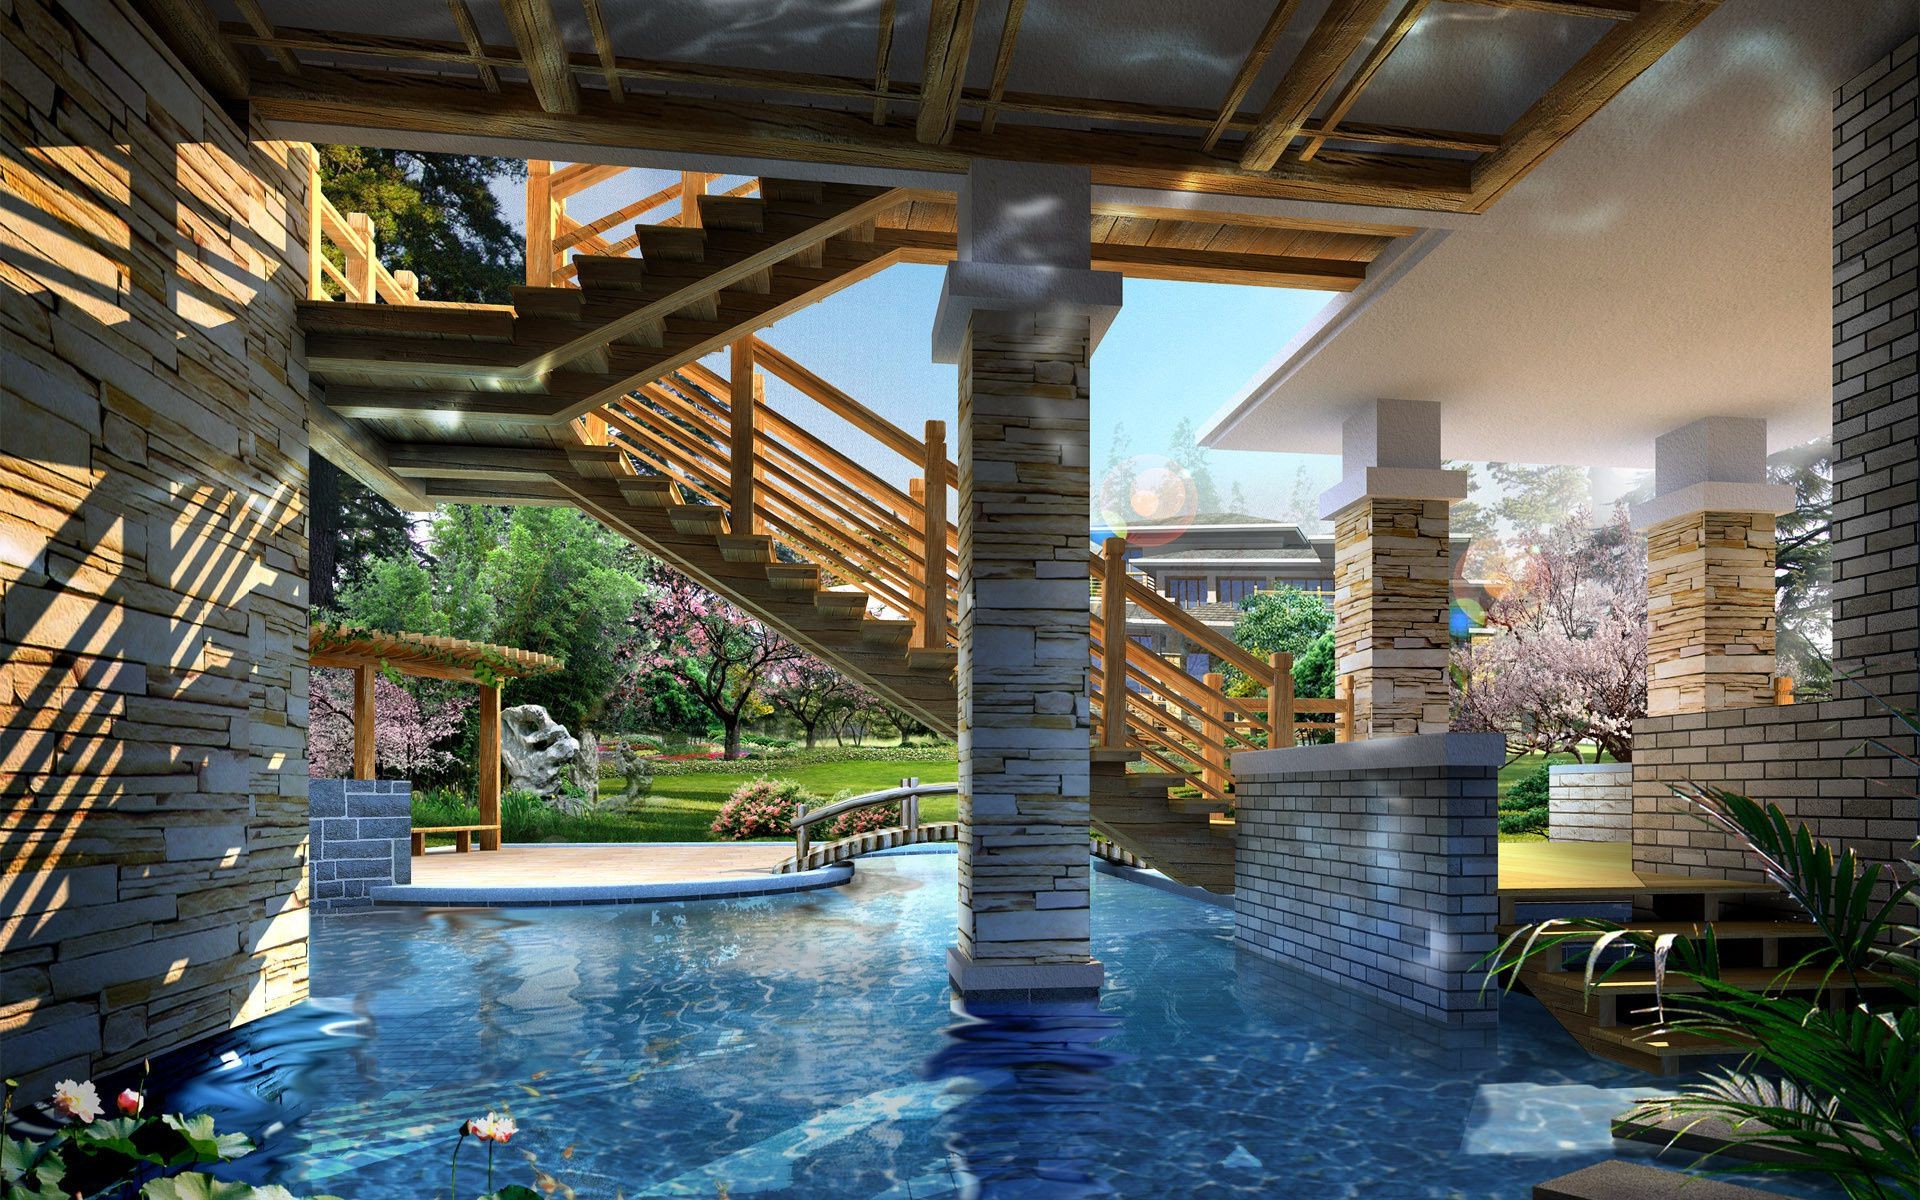 дома и коттеджи воды путешествия бассейн отель архитектура на открытом воздухе мост плавательный бассейн роскошные курорт лето